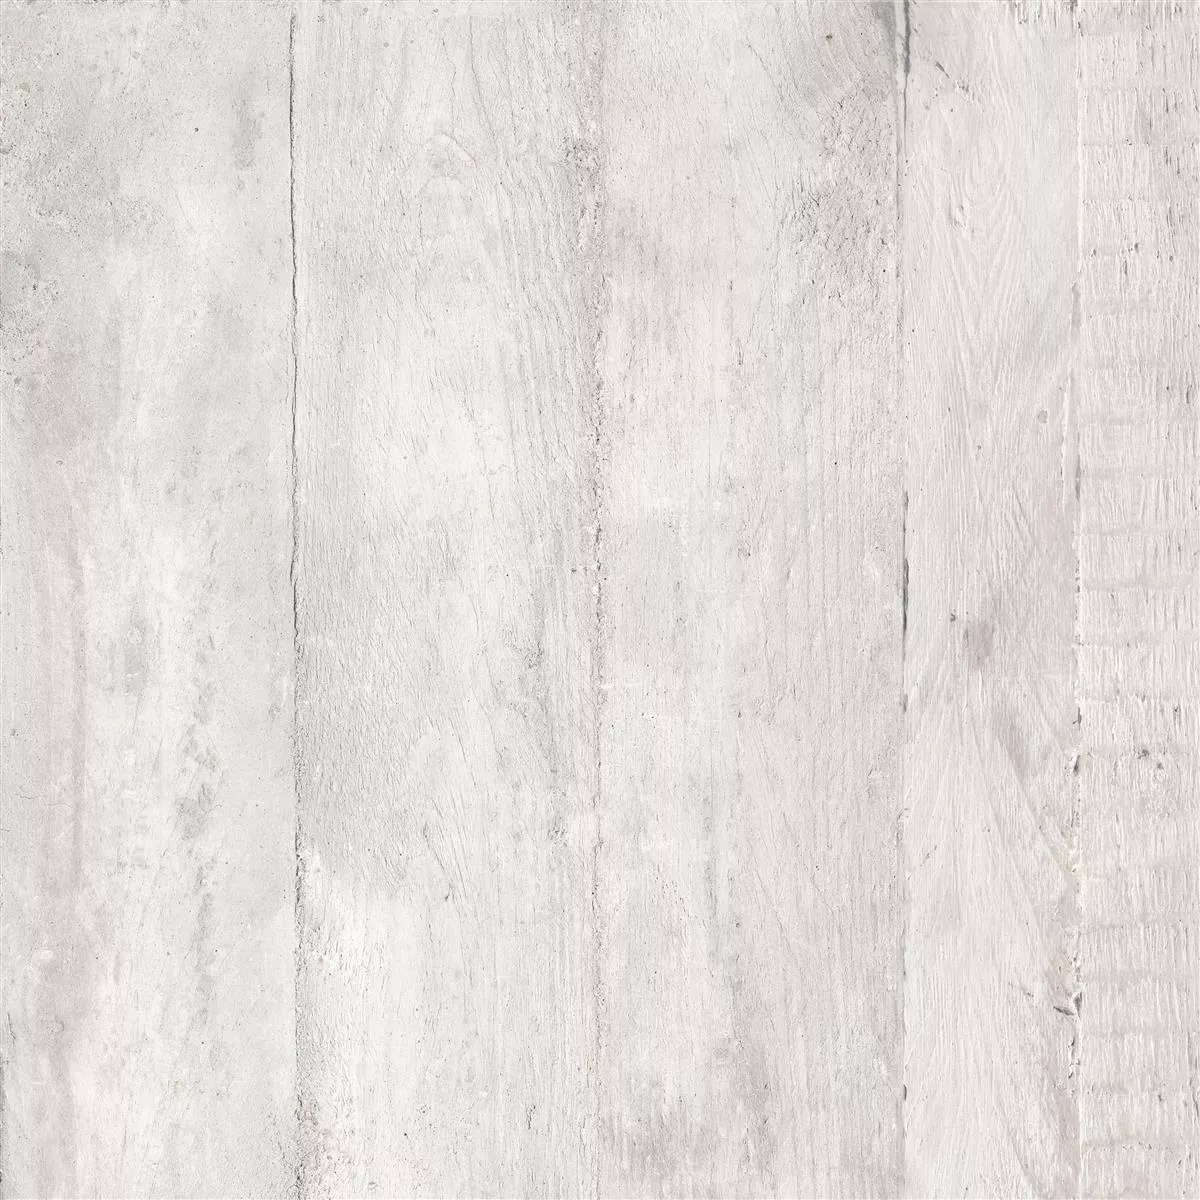 Πλακάκια Δαπέδου Gorki Όψη Ξύλου 60x60cm Γυαλισμένο Ασπρο